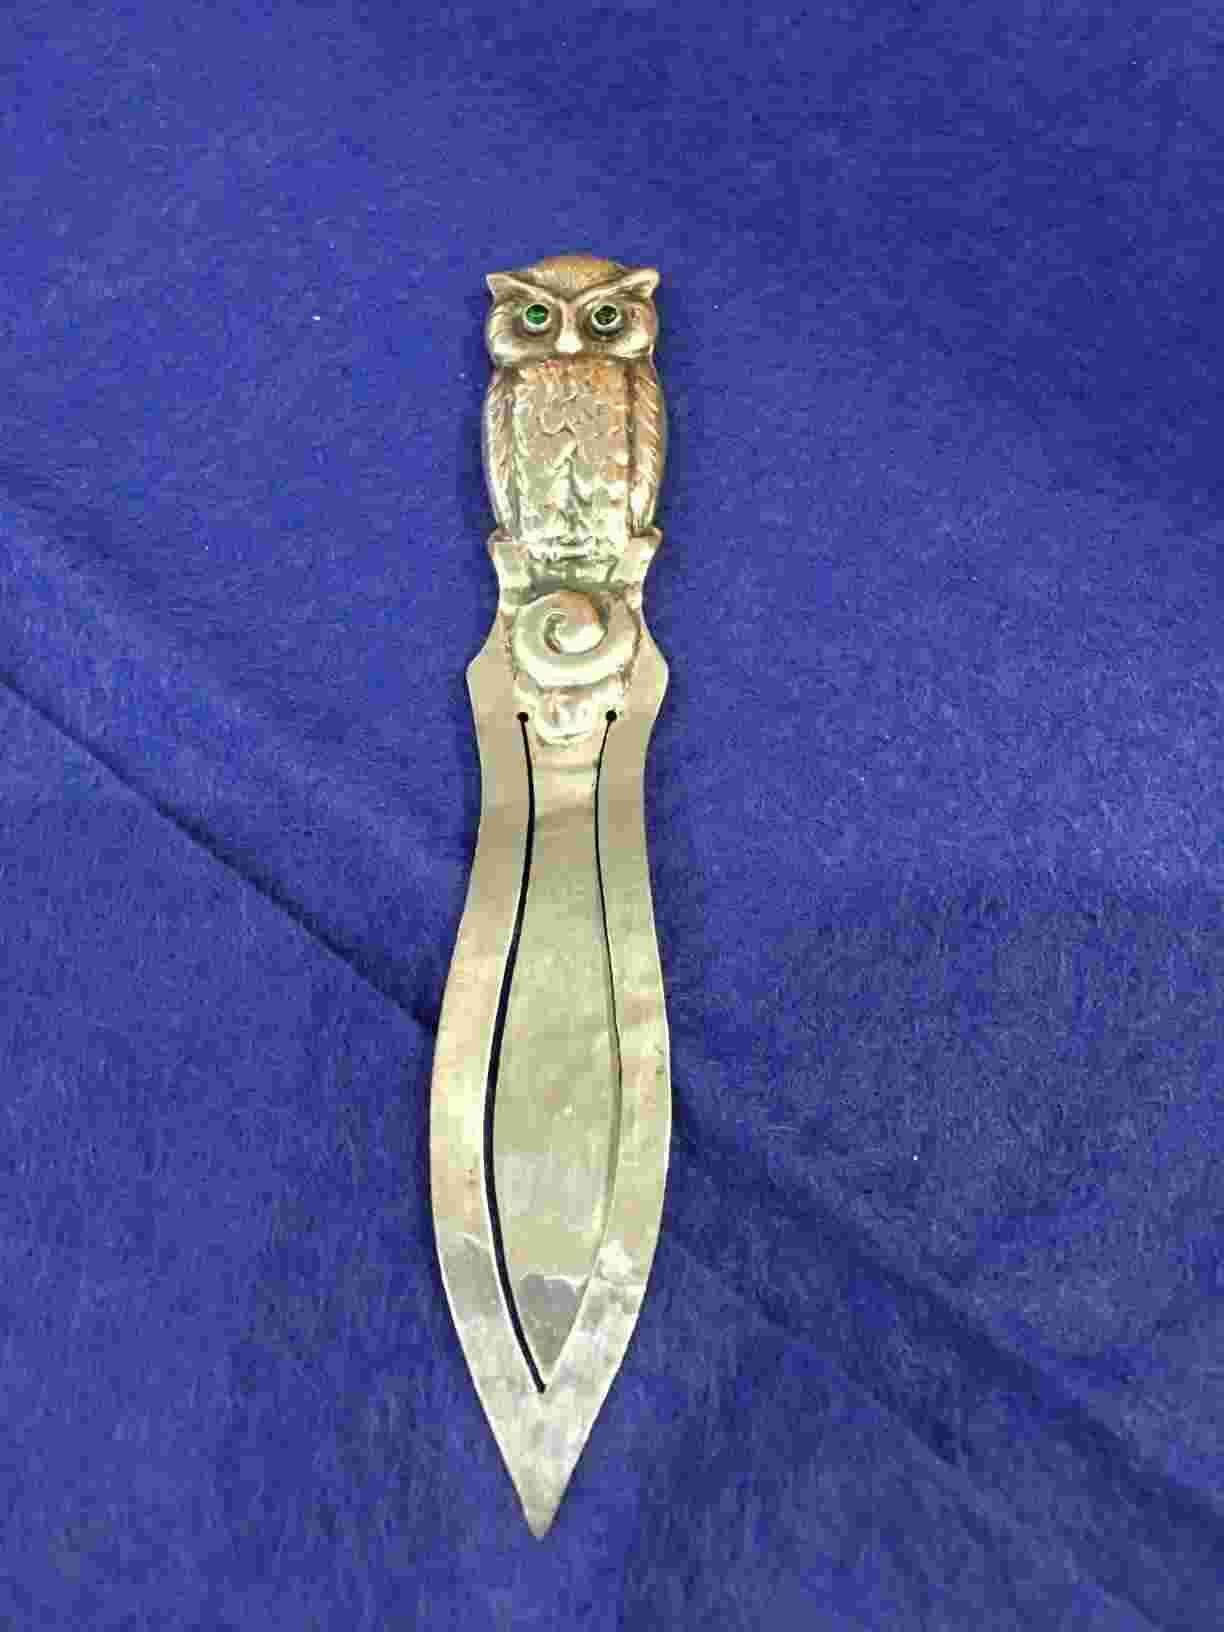 SOLGT - Bogmærke delvist hammerslået sølv (830S) smykket med øjne af grønne sten i perfekt stand.